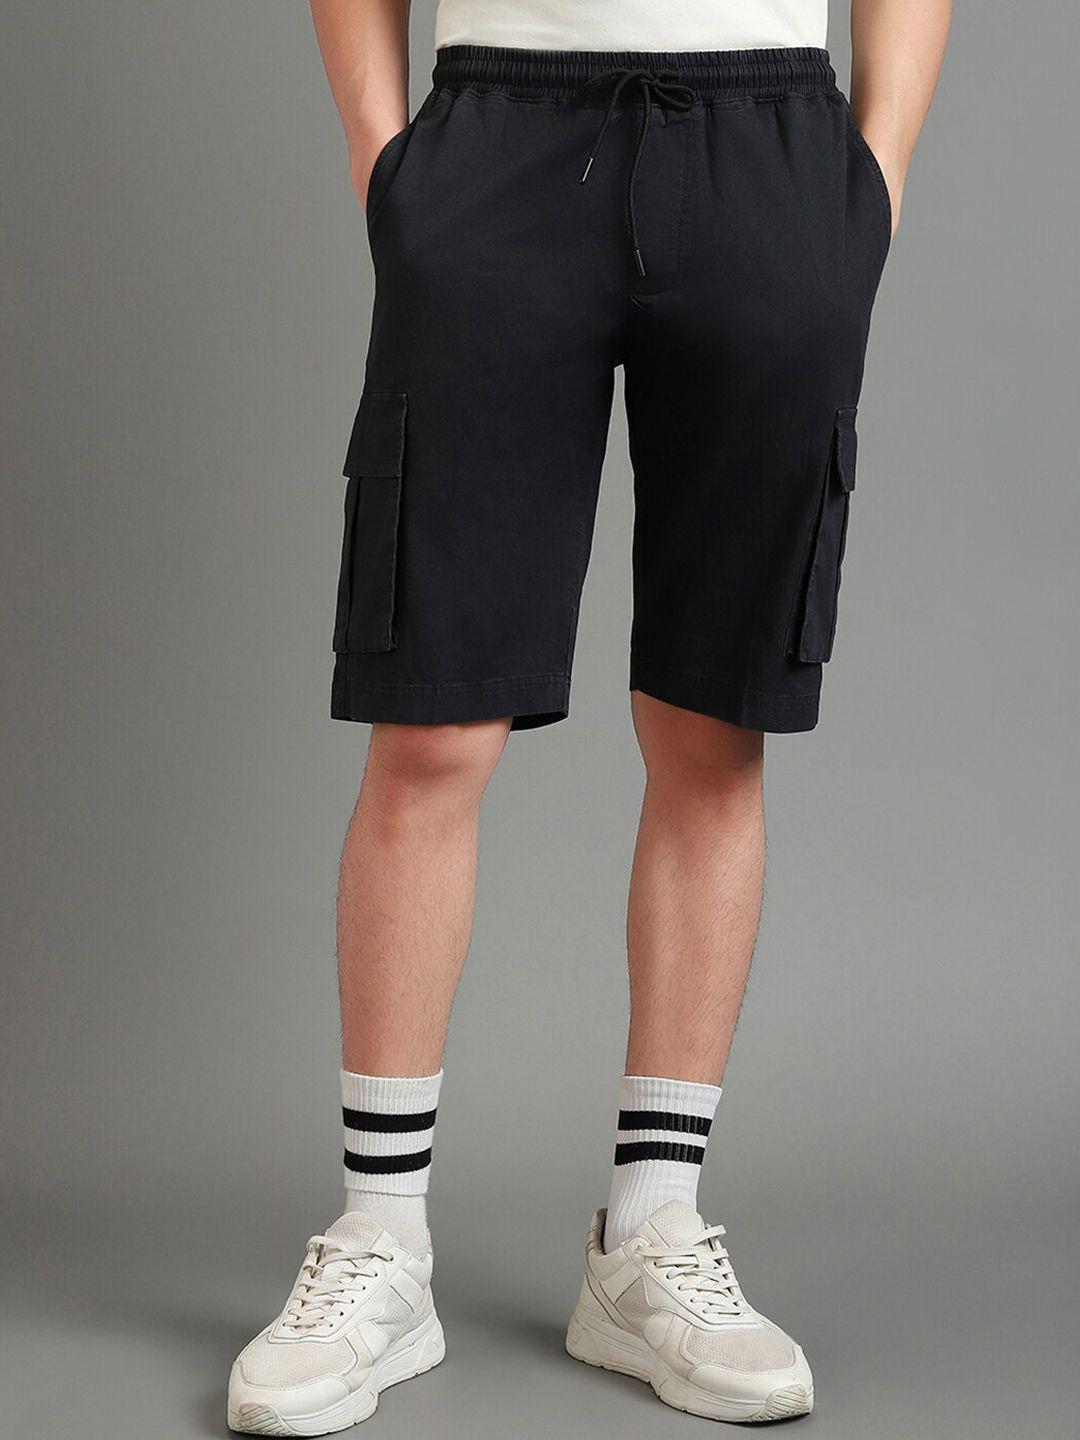 bewakoof-men-black-cotton-cargo-shorts